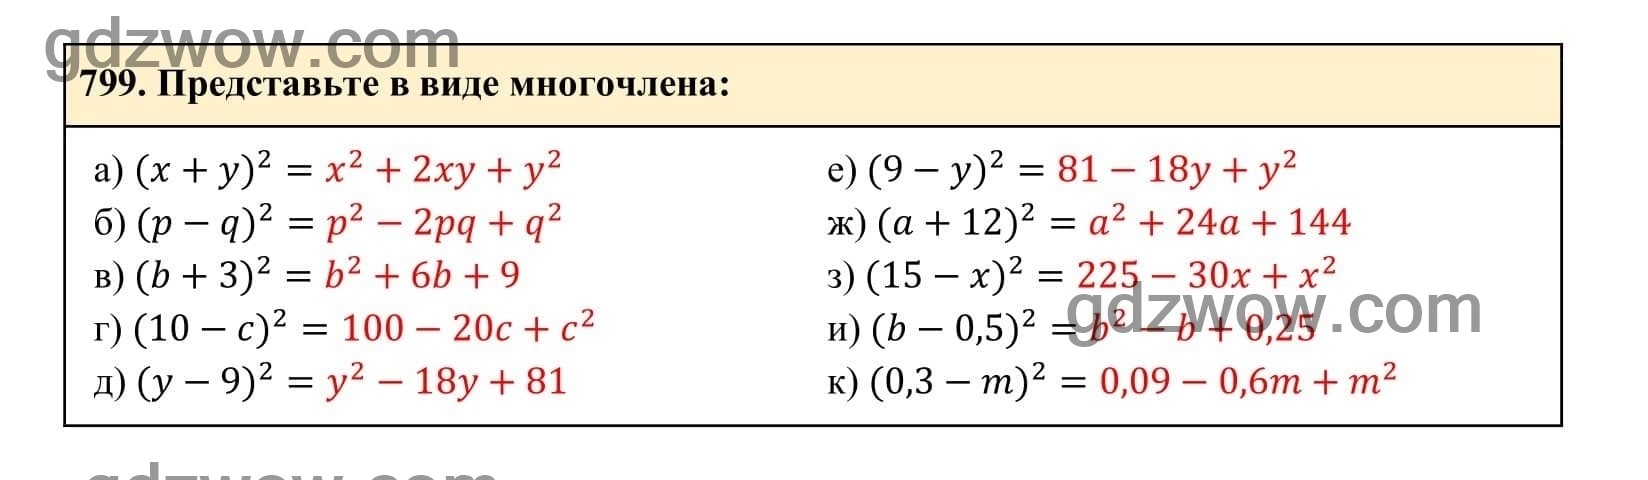 Упражнение 799 - ГДЗ по Алгебре 7 класс Учебник Макарычев (решебник) - GDZwow